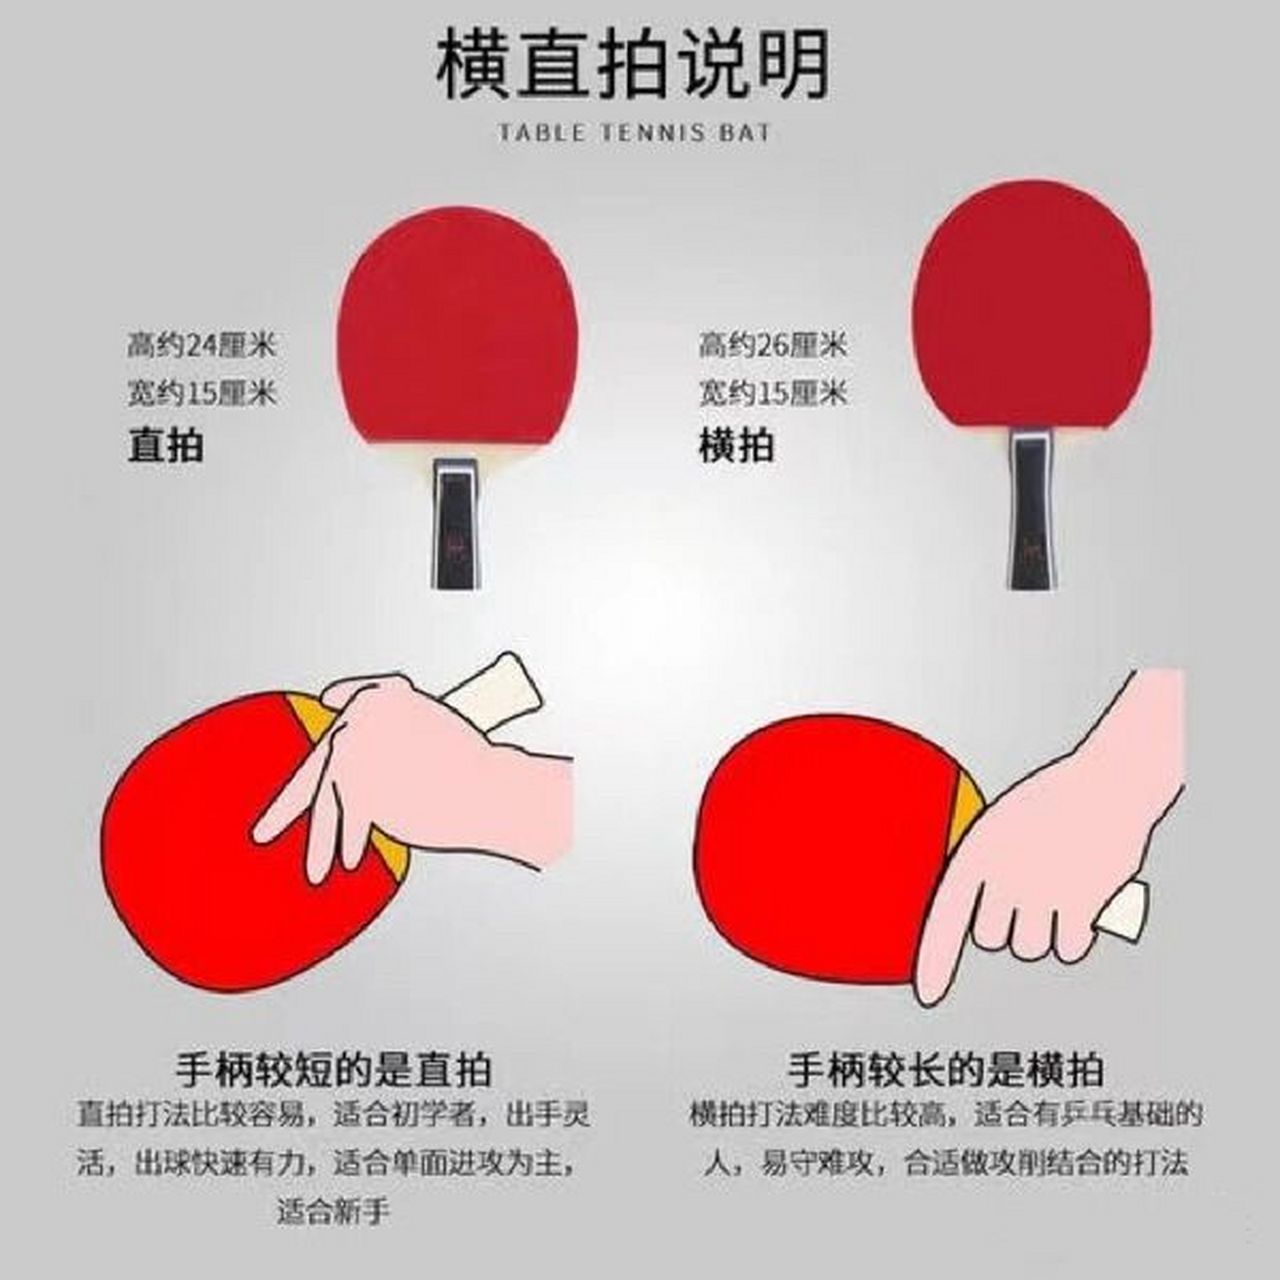 直拍和横拍 直拍:直板的拍柄短(约24cm),握法是「筷子握法」,优点是